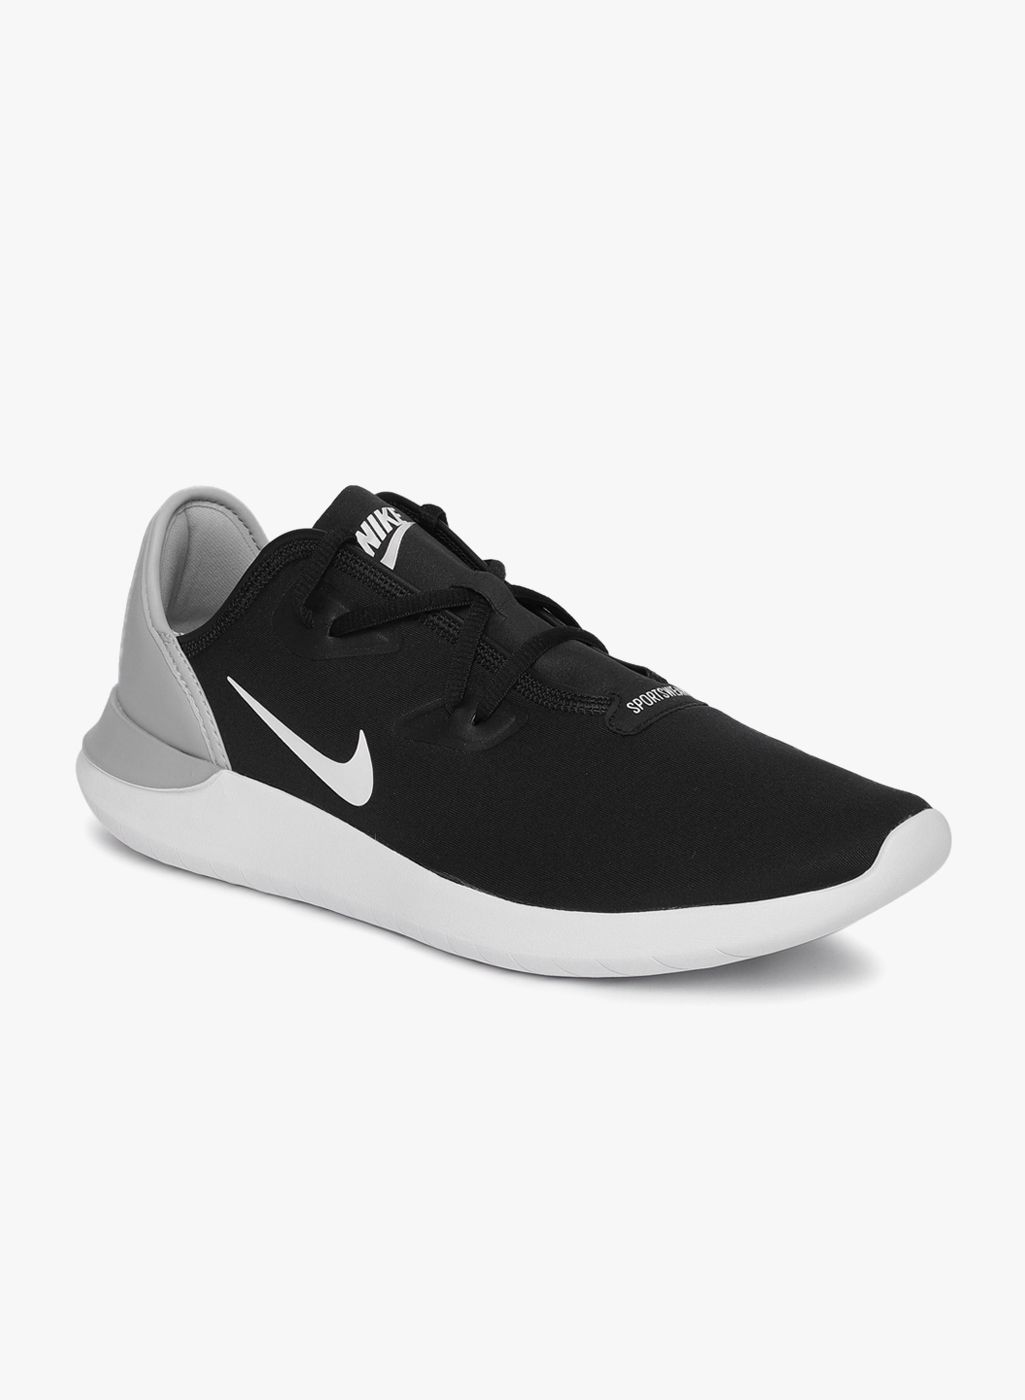 Nike: Shop Latest Nike Shoes, Clothing Online - Jabong